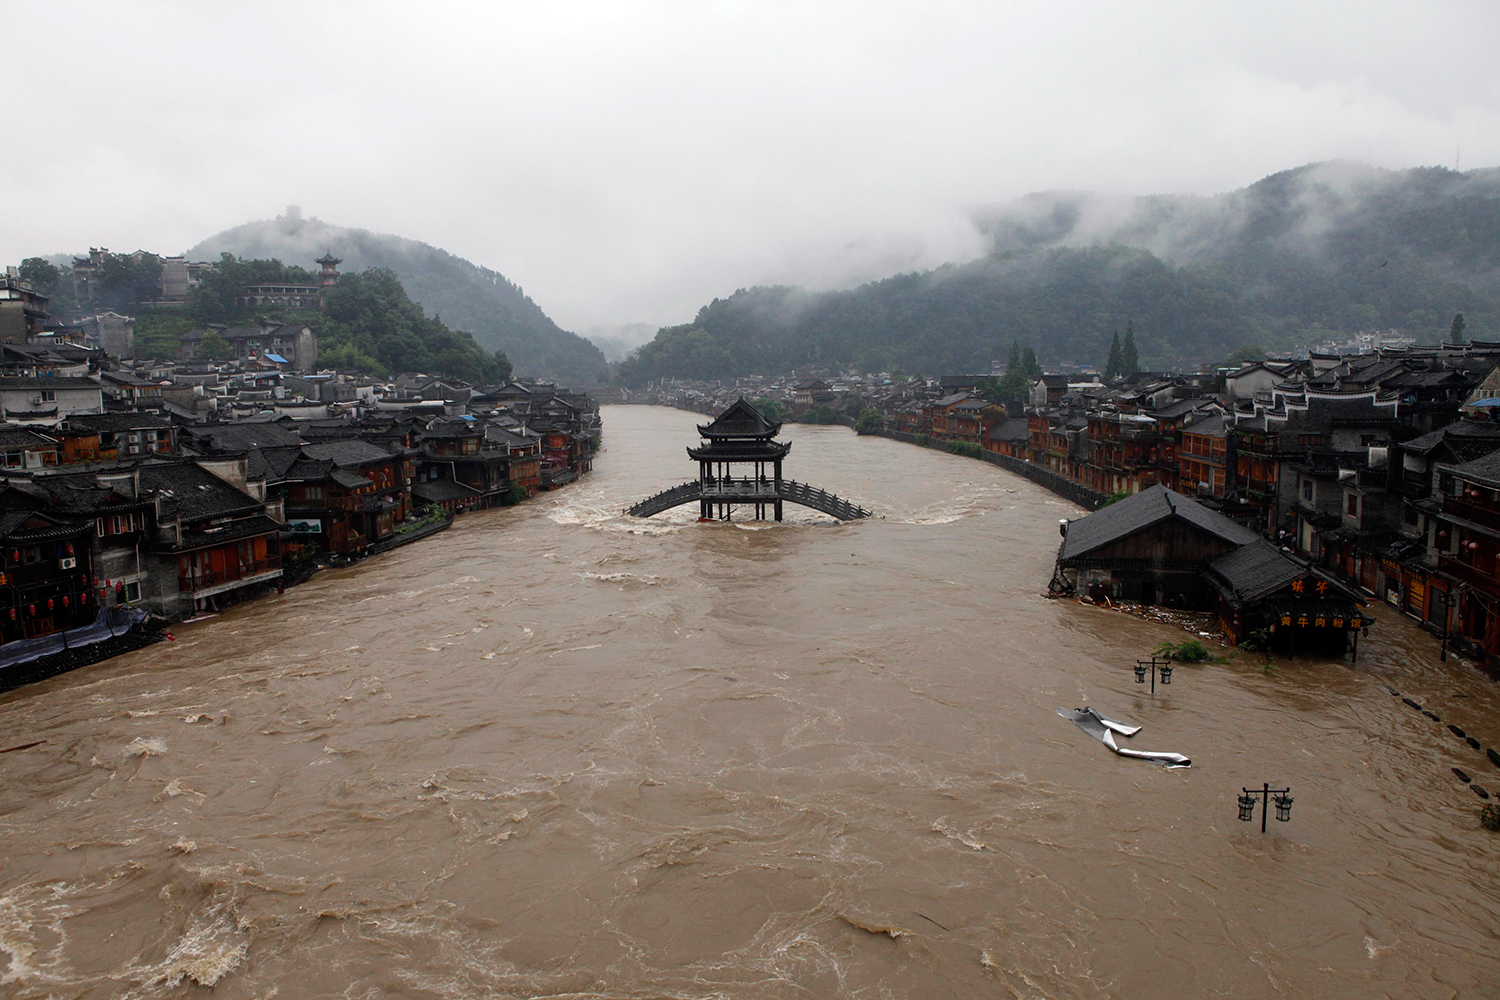 Alerta roja por lluvias torrenciales en centro de China